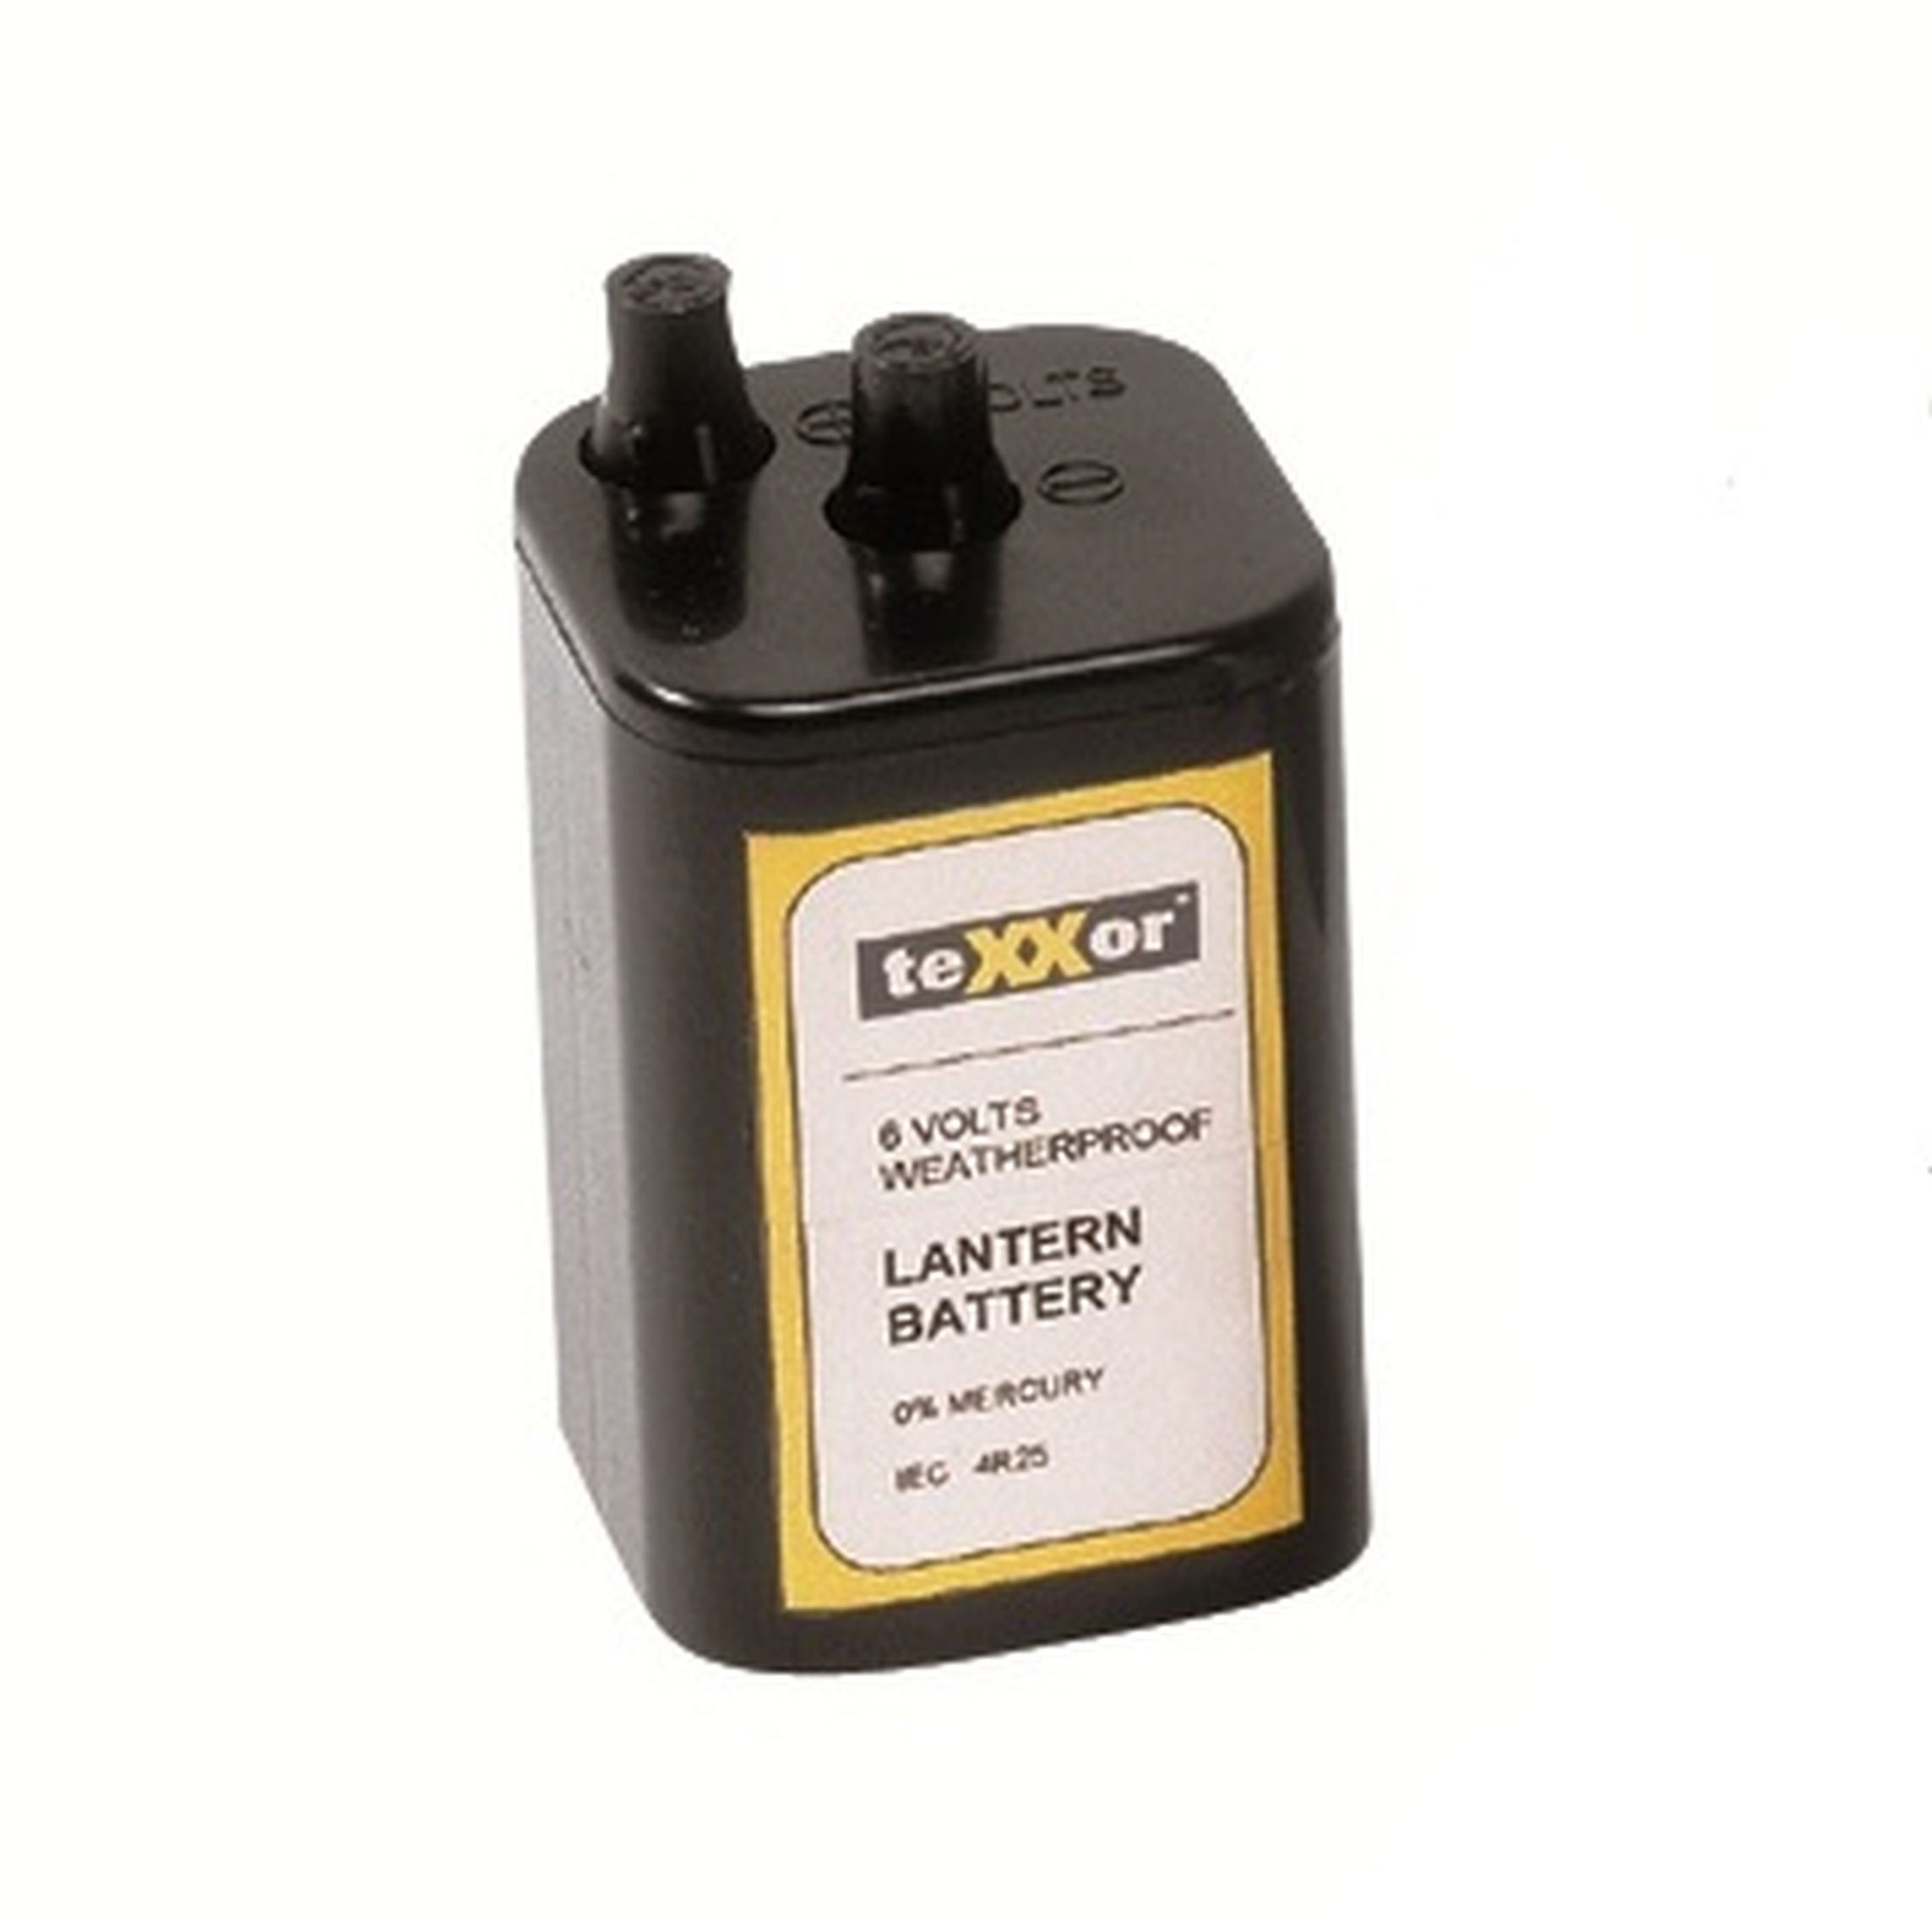 teXXor® Batterie 6V 7AH IEC 4R25 inklusive Entsorgungspauschale